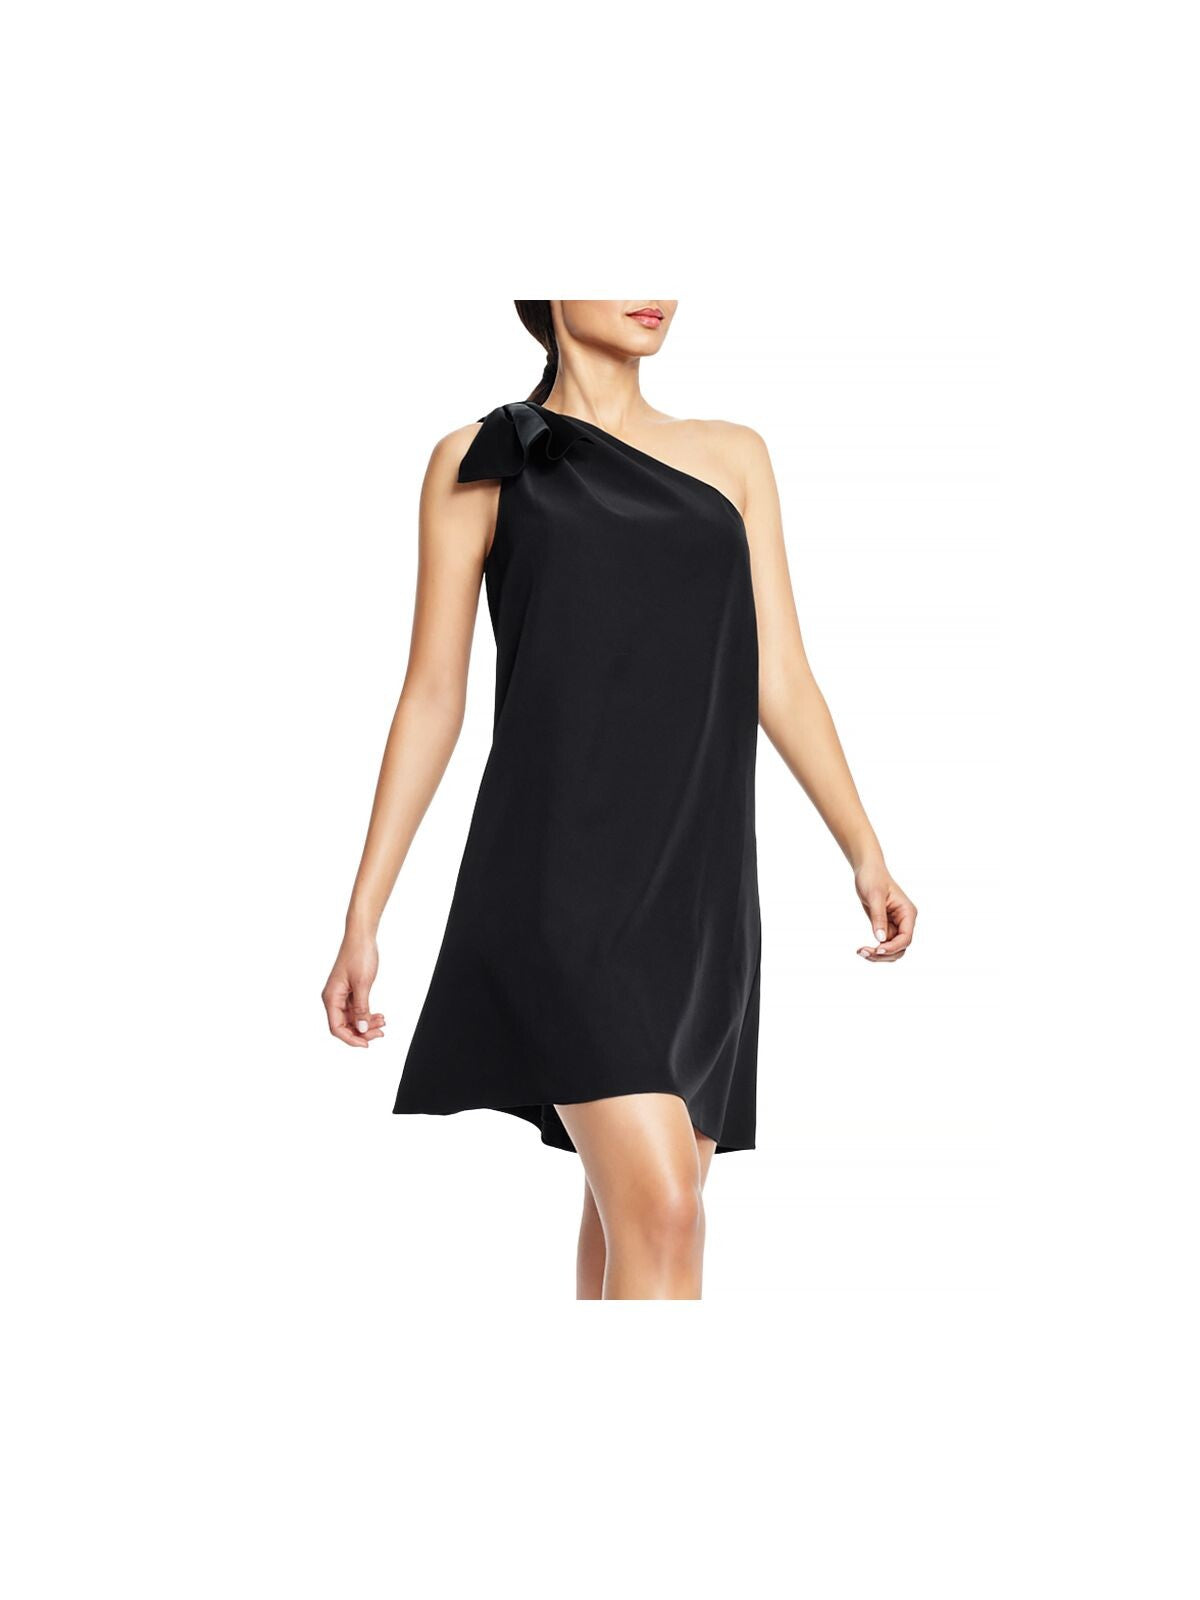 AIDAN MATTOX Womens Black Sleeveless Asymmetrical Neckline Above The Knee Evening Shift Dress 2